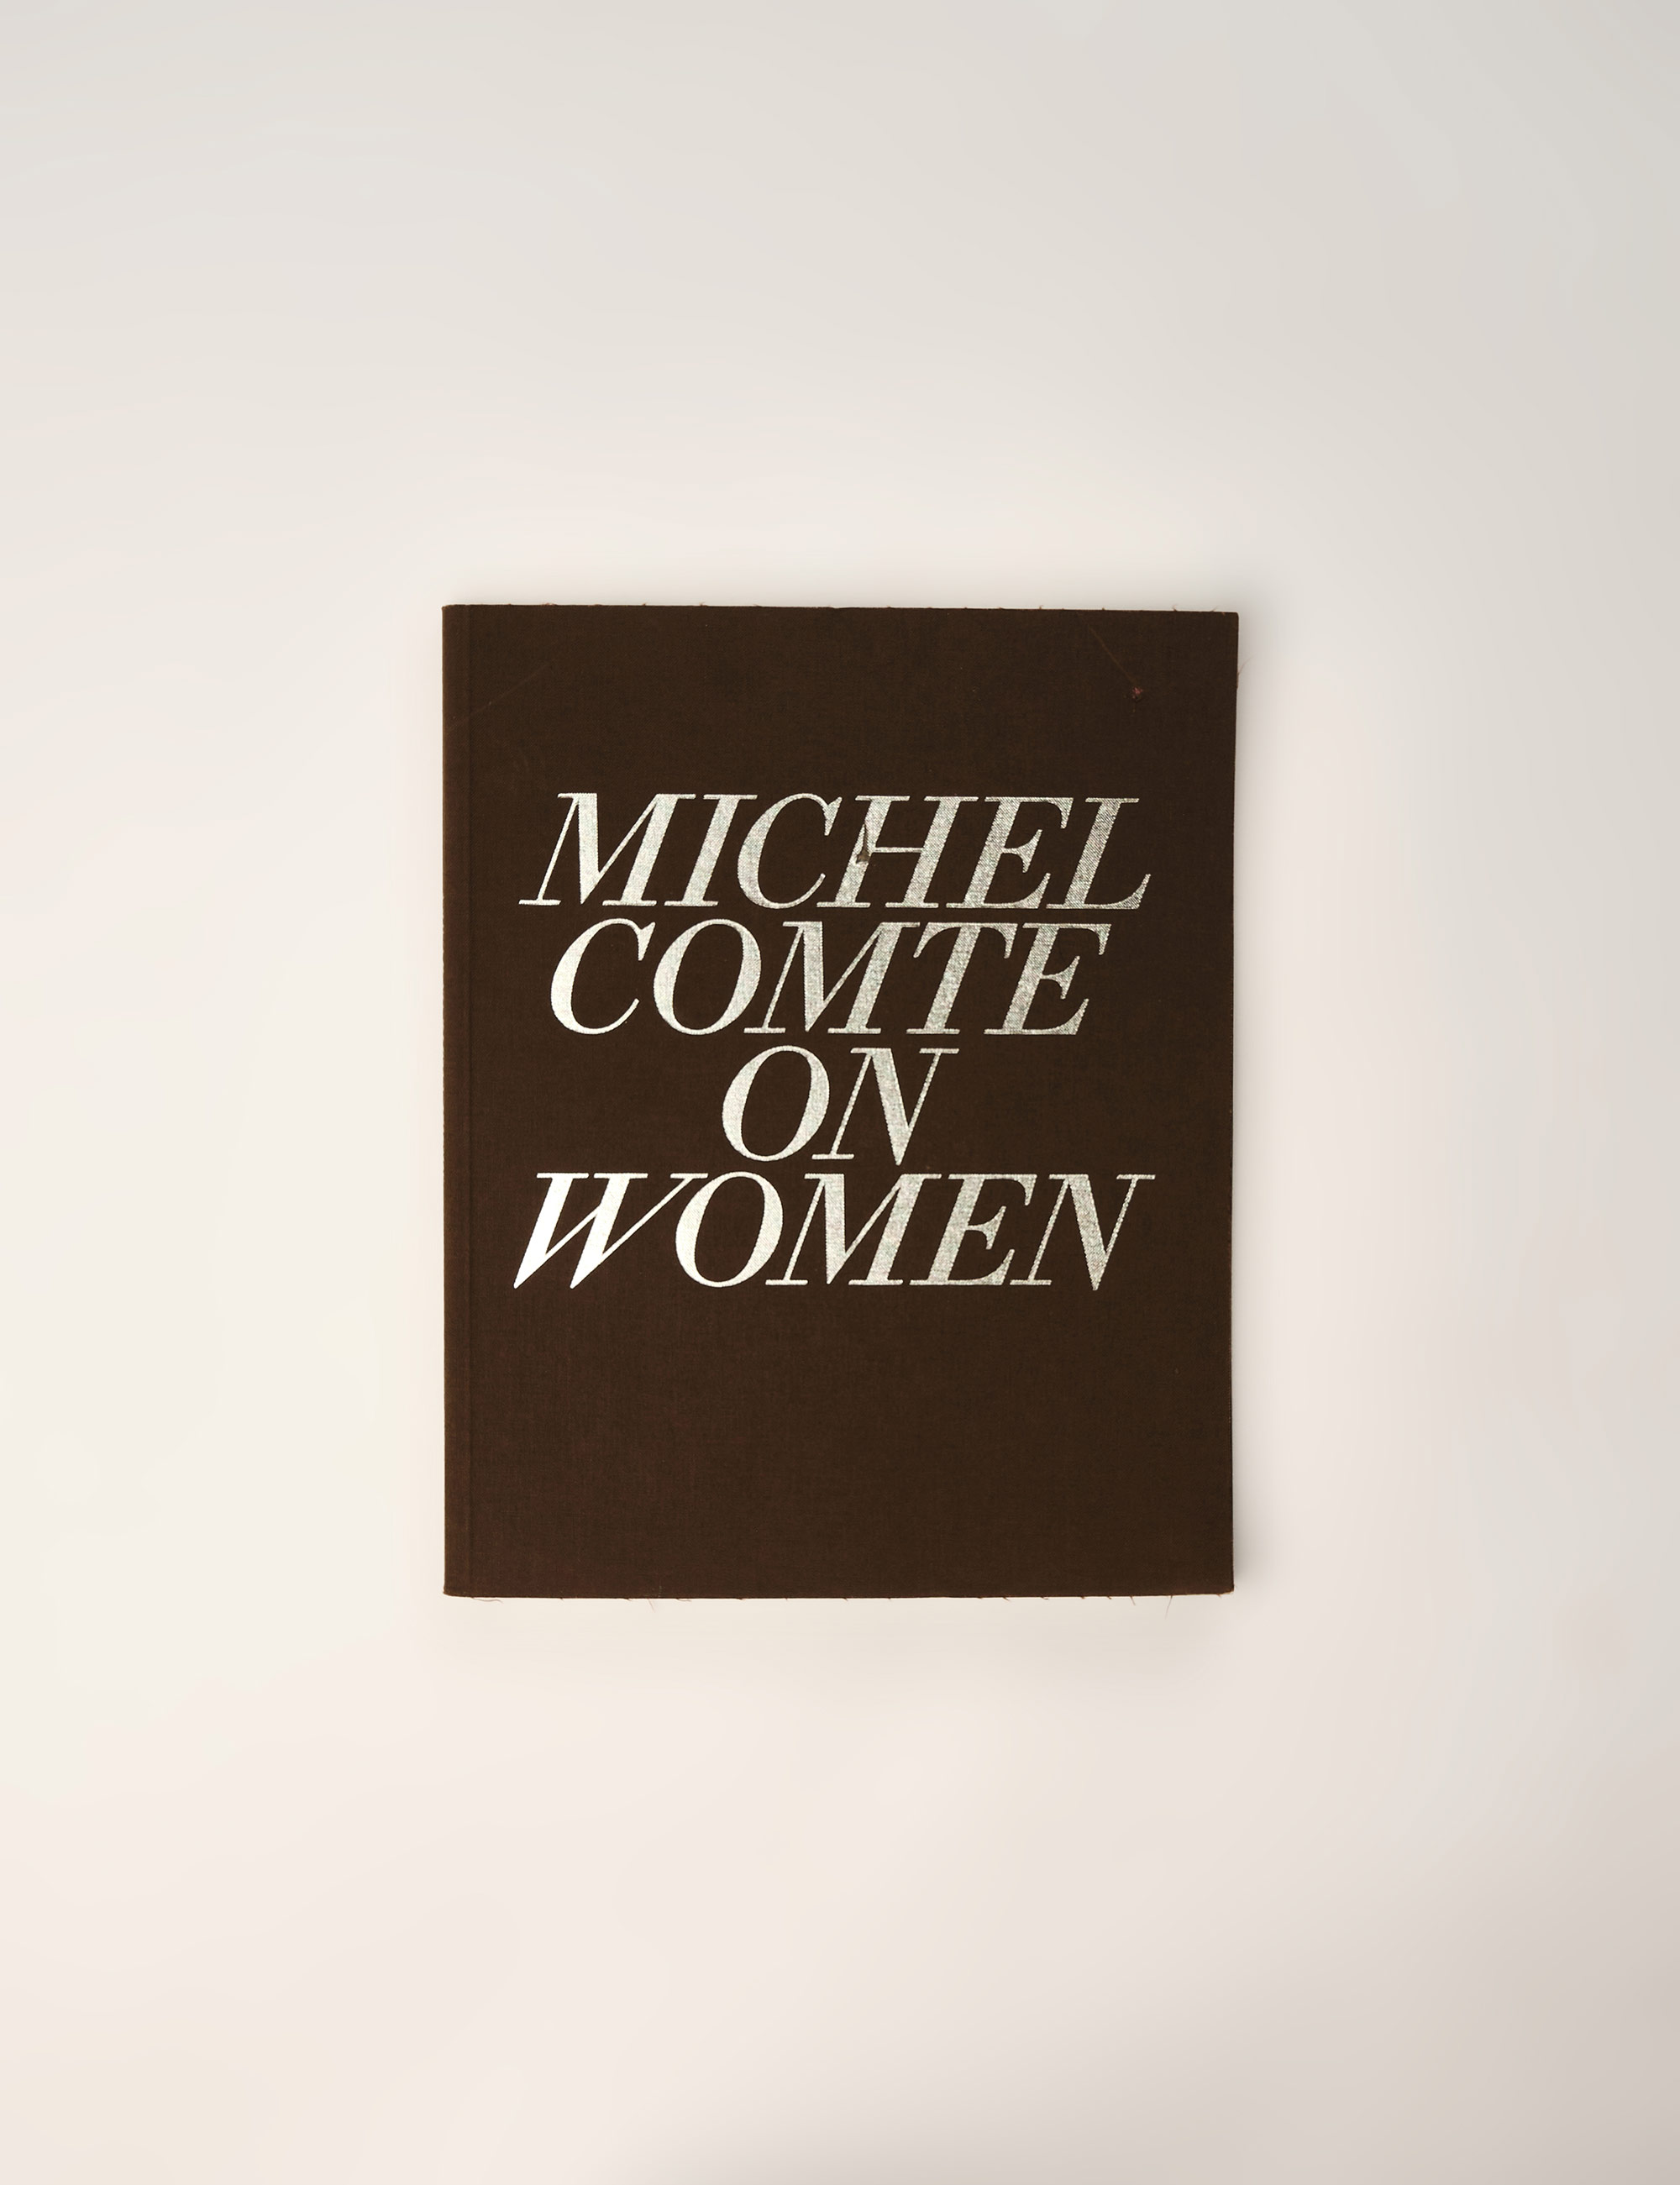 Журнал Michel Comte on Women